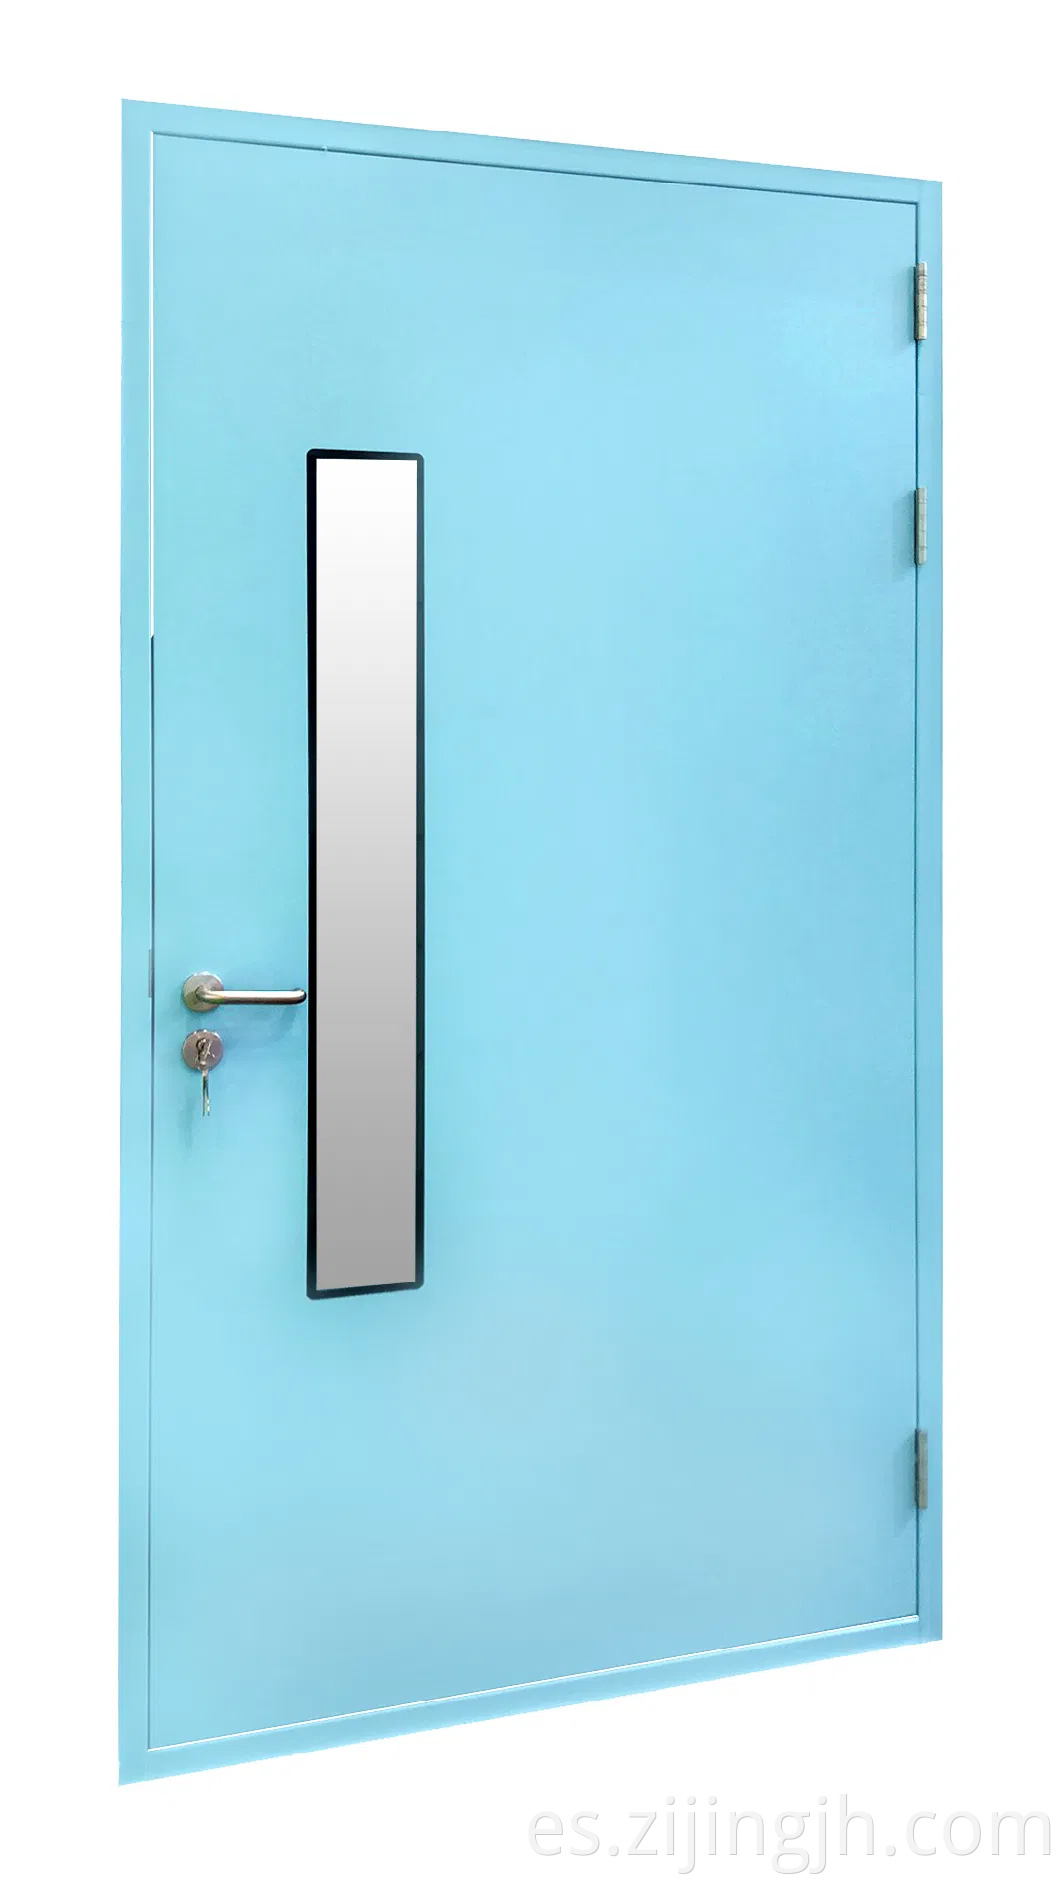 Puerta de la sala de acero limpia utilizada para la industria alimentaria y el laboratorio bio con ISO9001